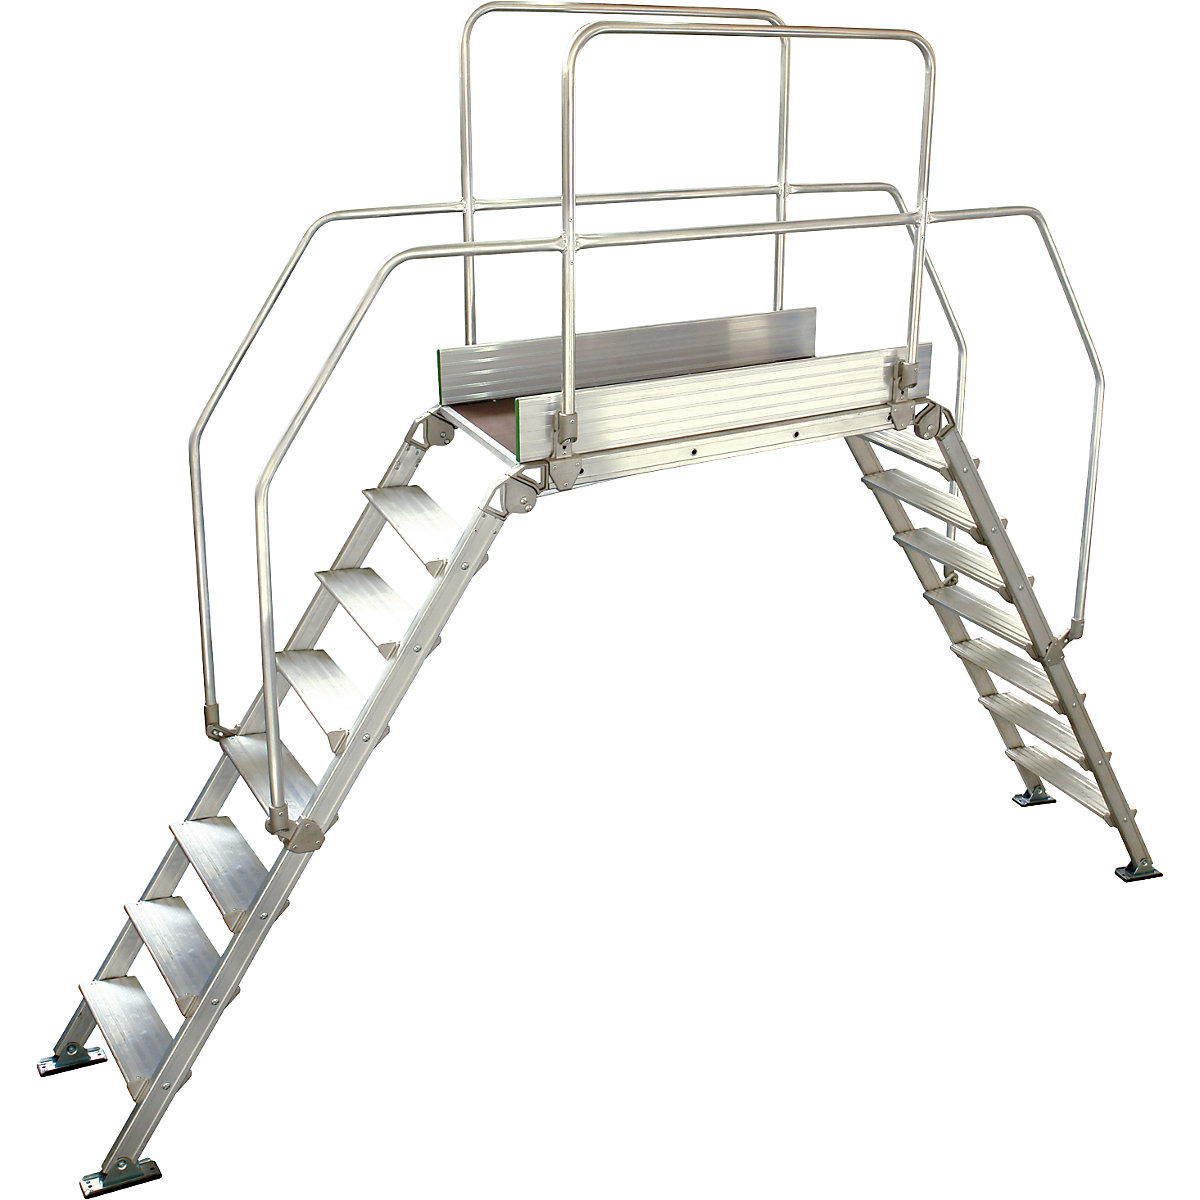 Aluminium ladderbrug, totale belasting 200 kg, 8 treden, platform 1200 x 530 mm-15